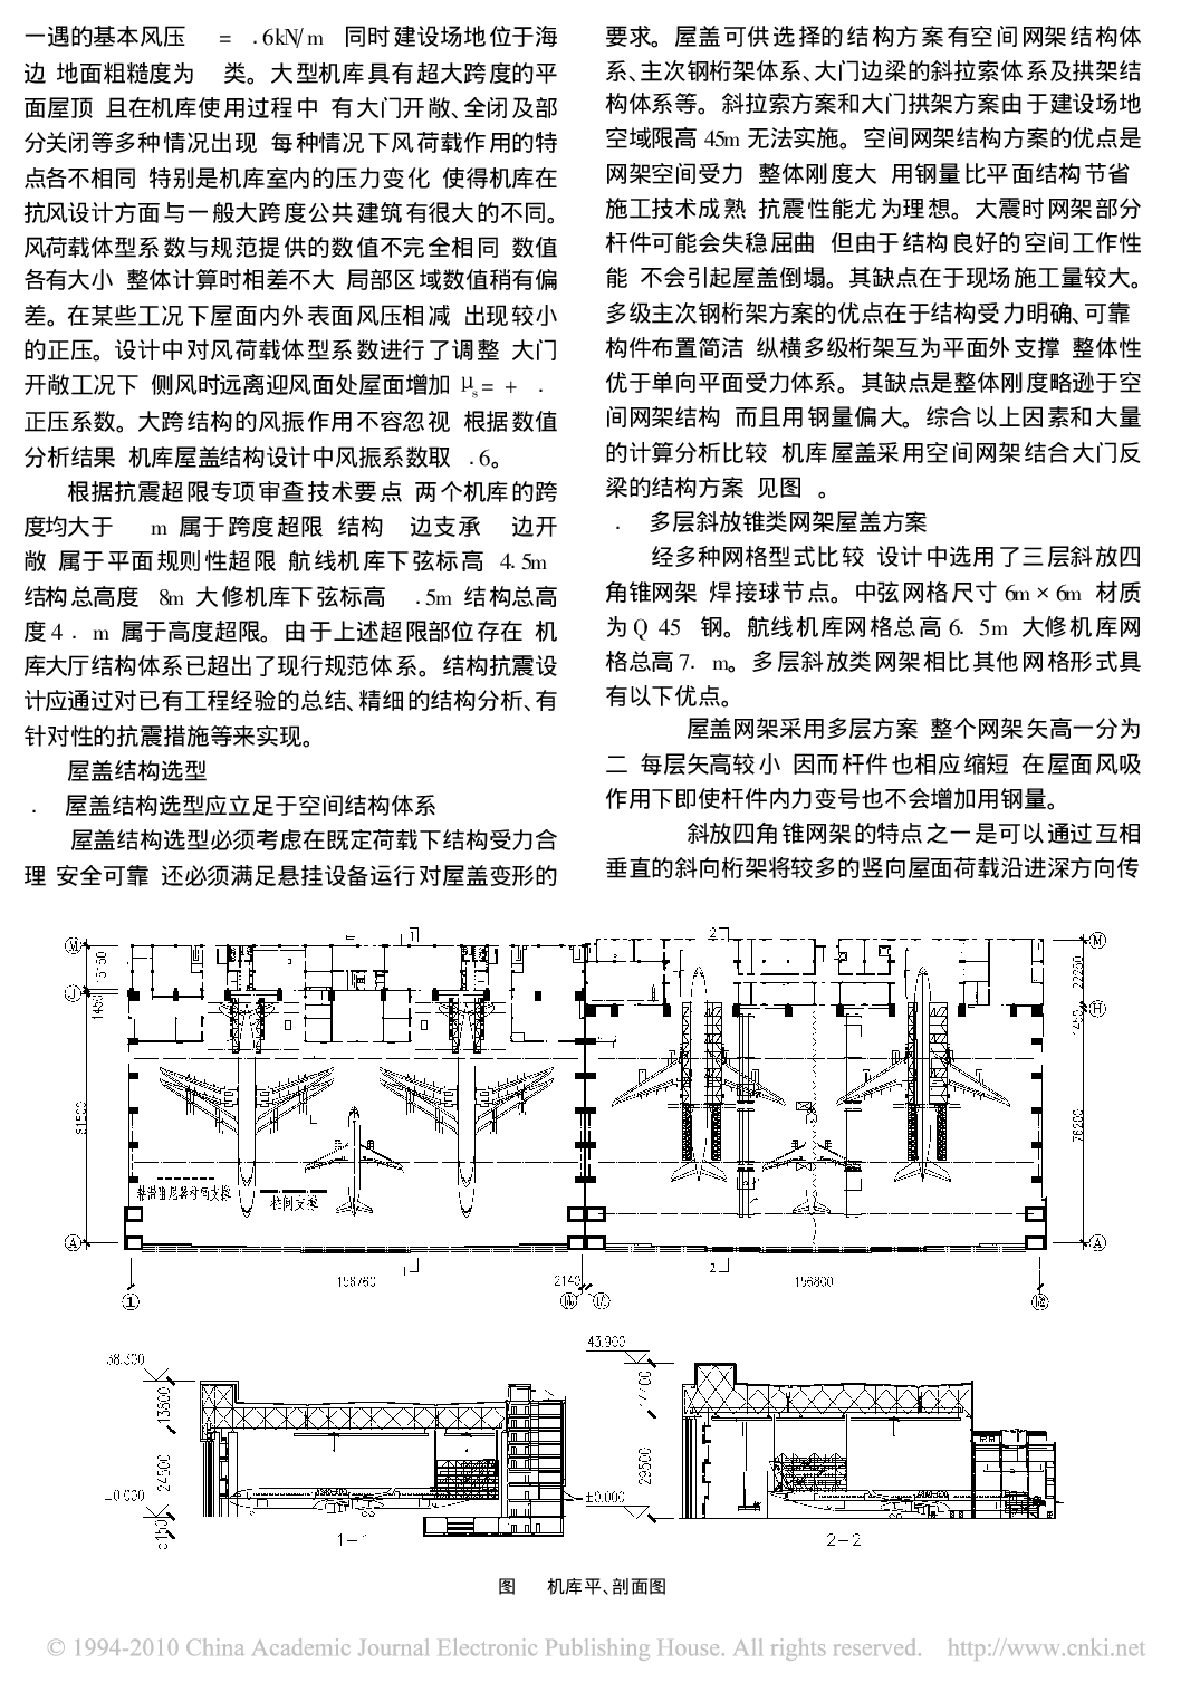 东航航线&#1048577;STARCO 大修机库结构设计-图二